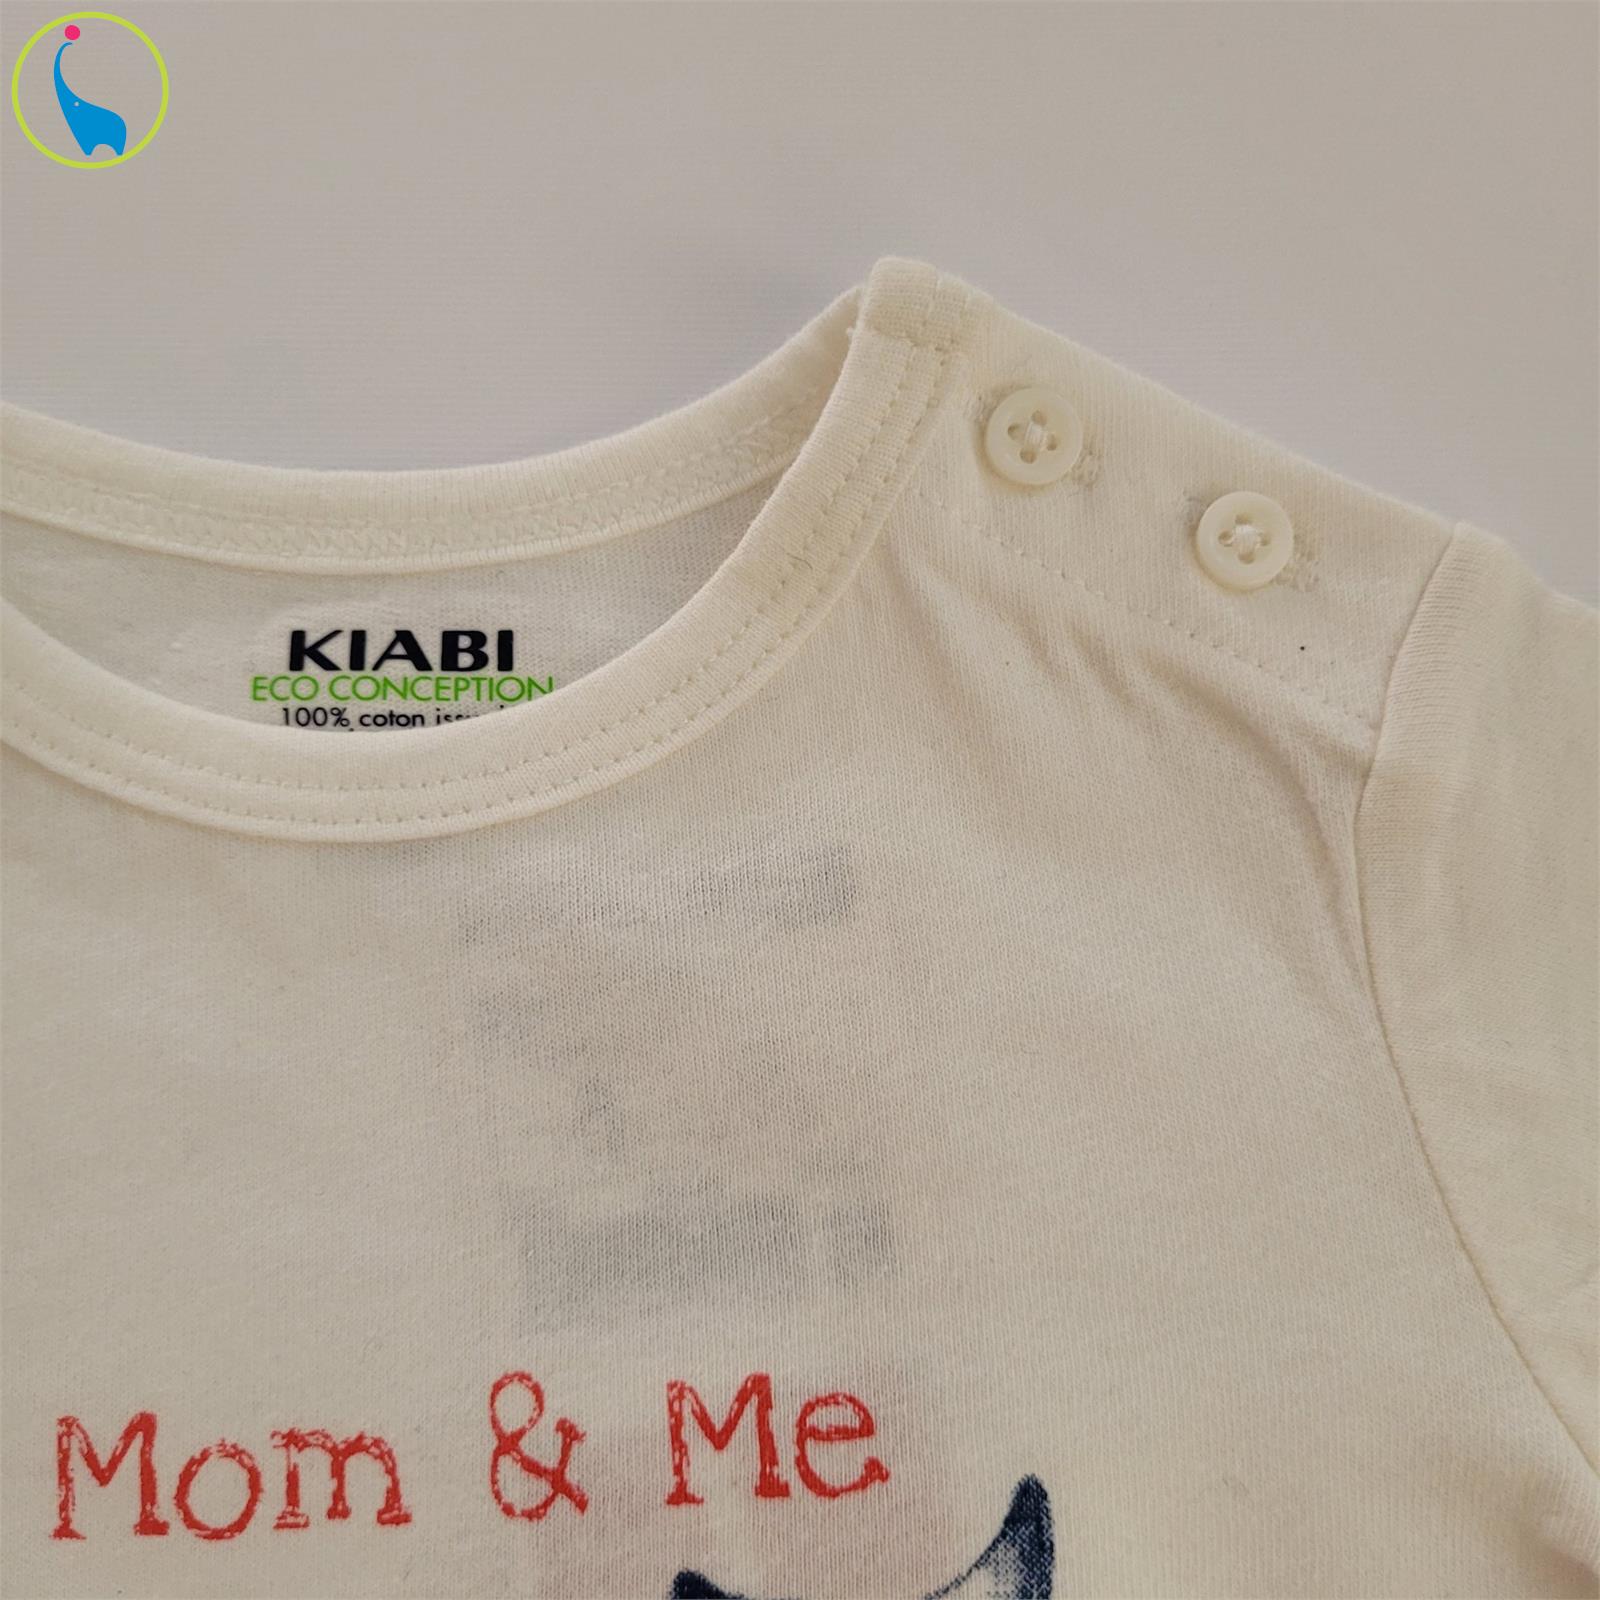 تی شرت آستین کوتاه نوزادی کیابی مدل 1345